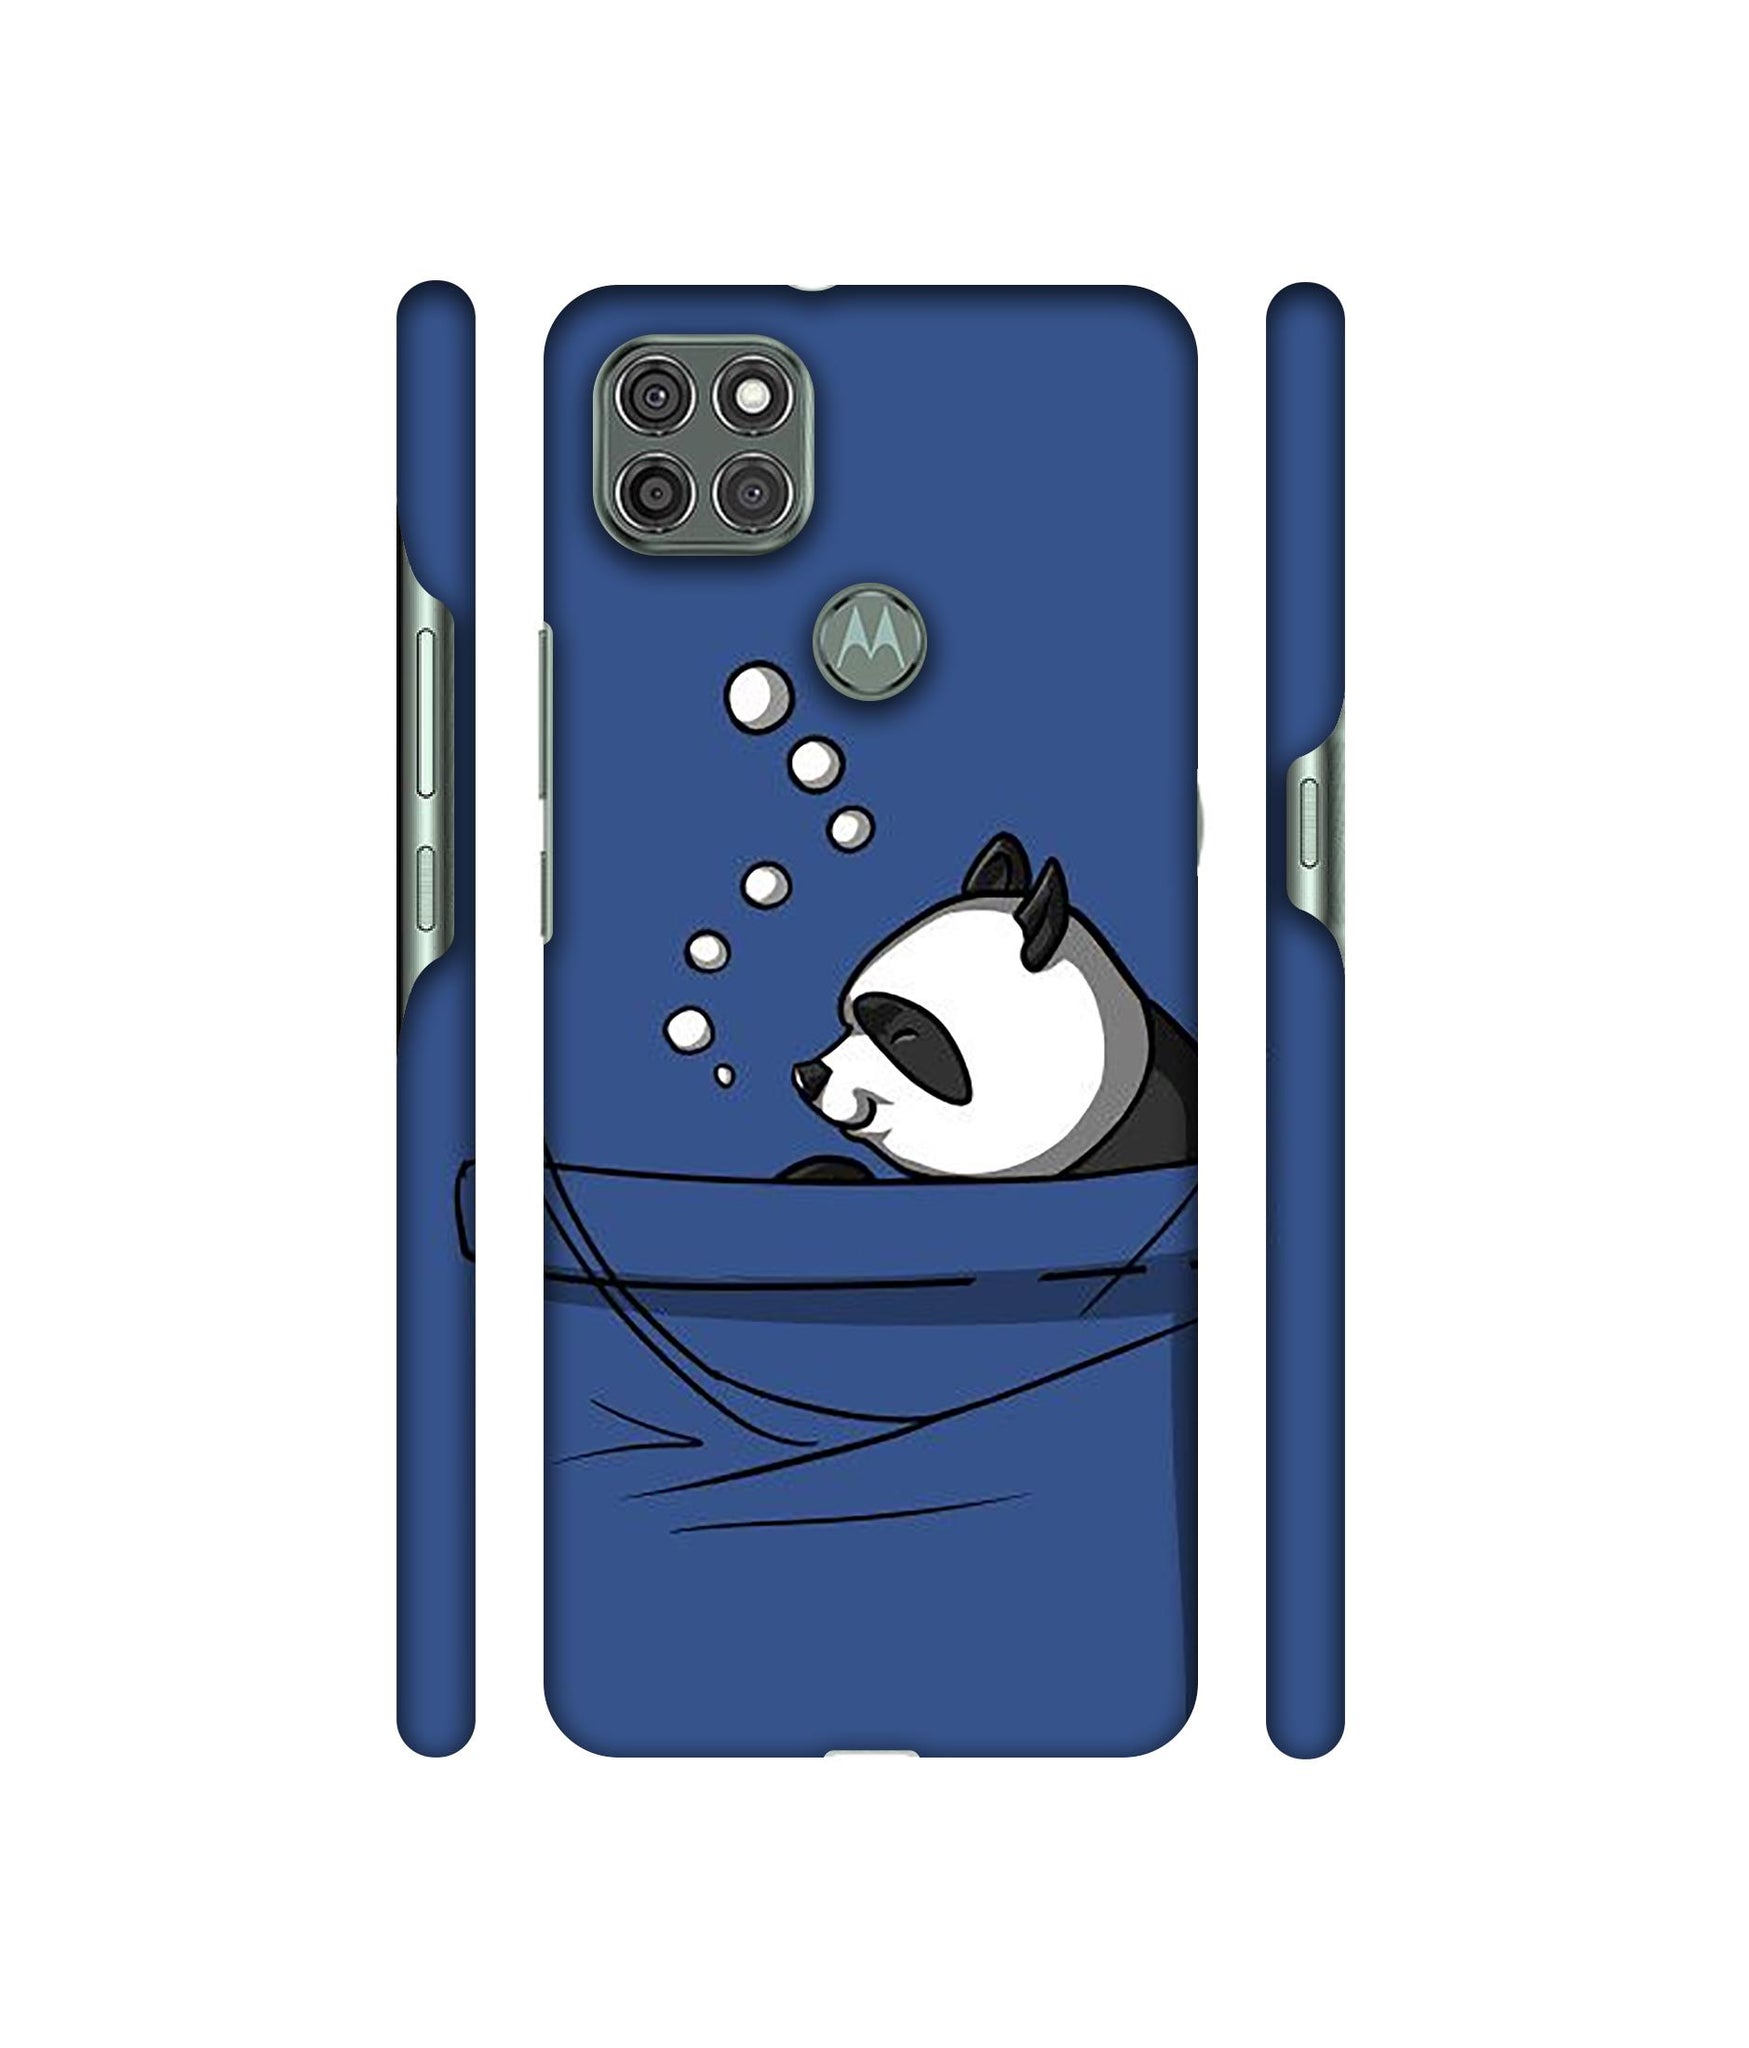 Lasy Panda Designer Hard Back Cover for Motorola Moto G9 Power